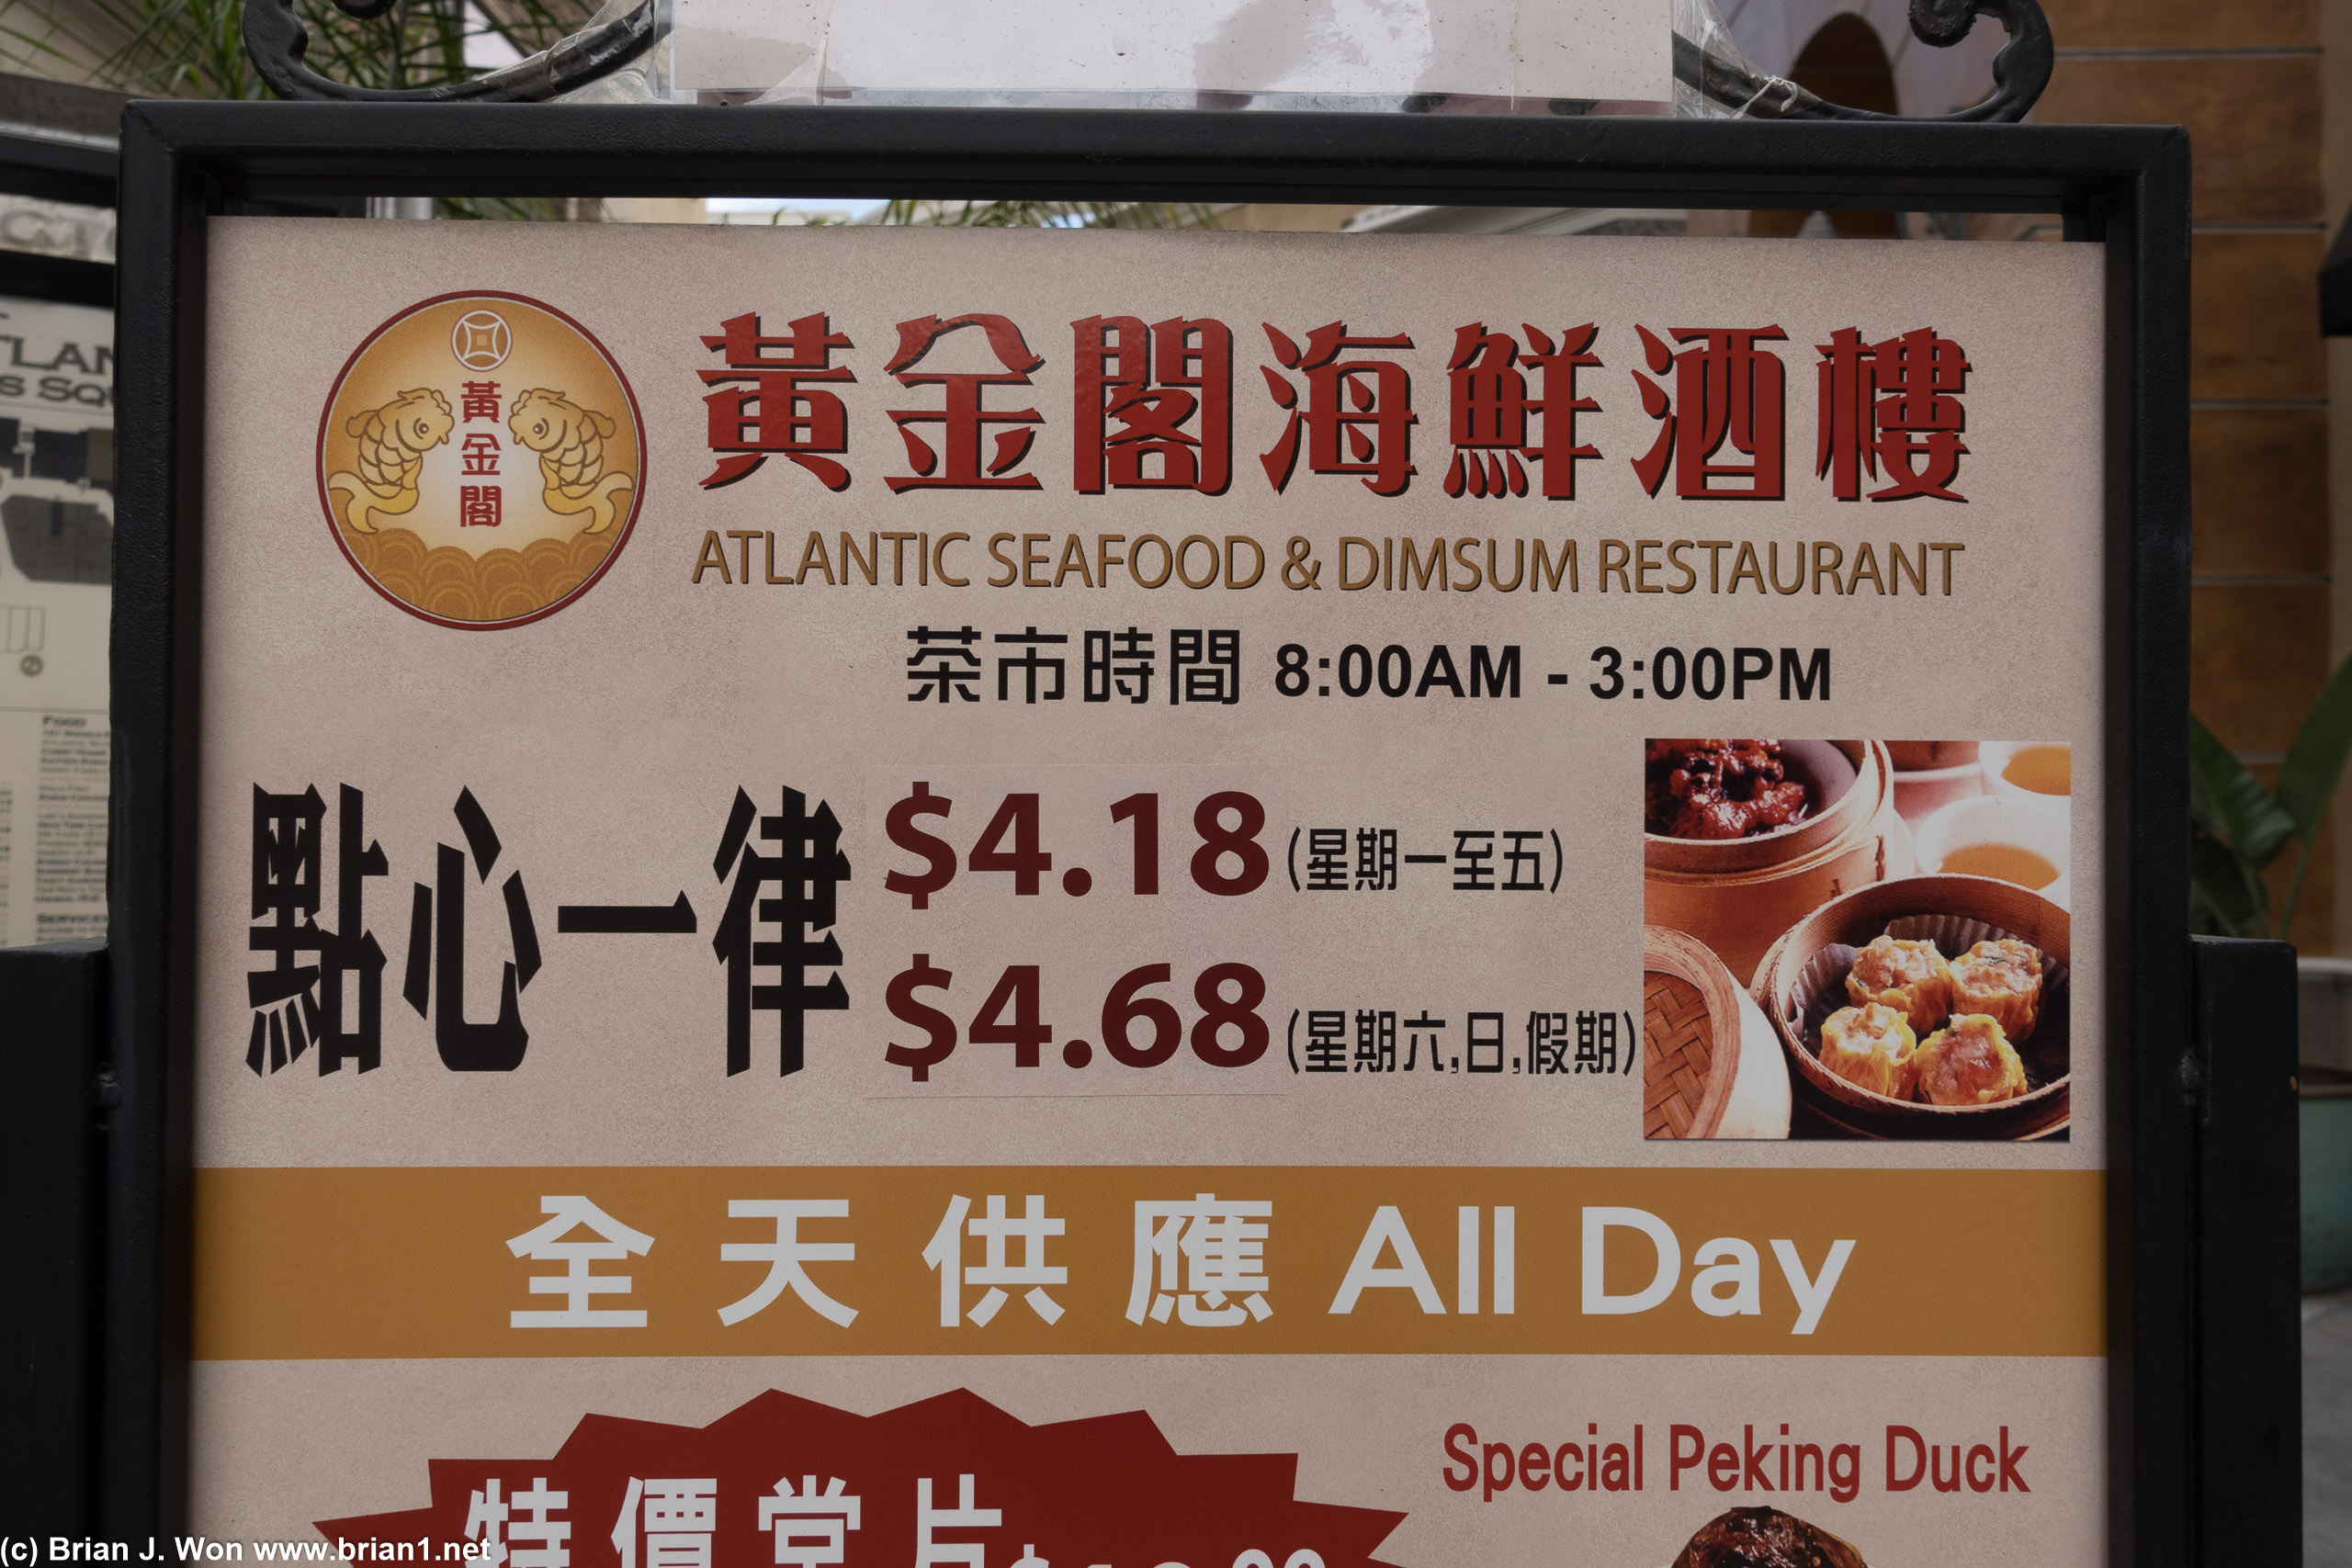 Dim sum isn't a cheap meal anymore.